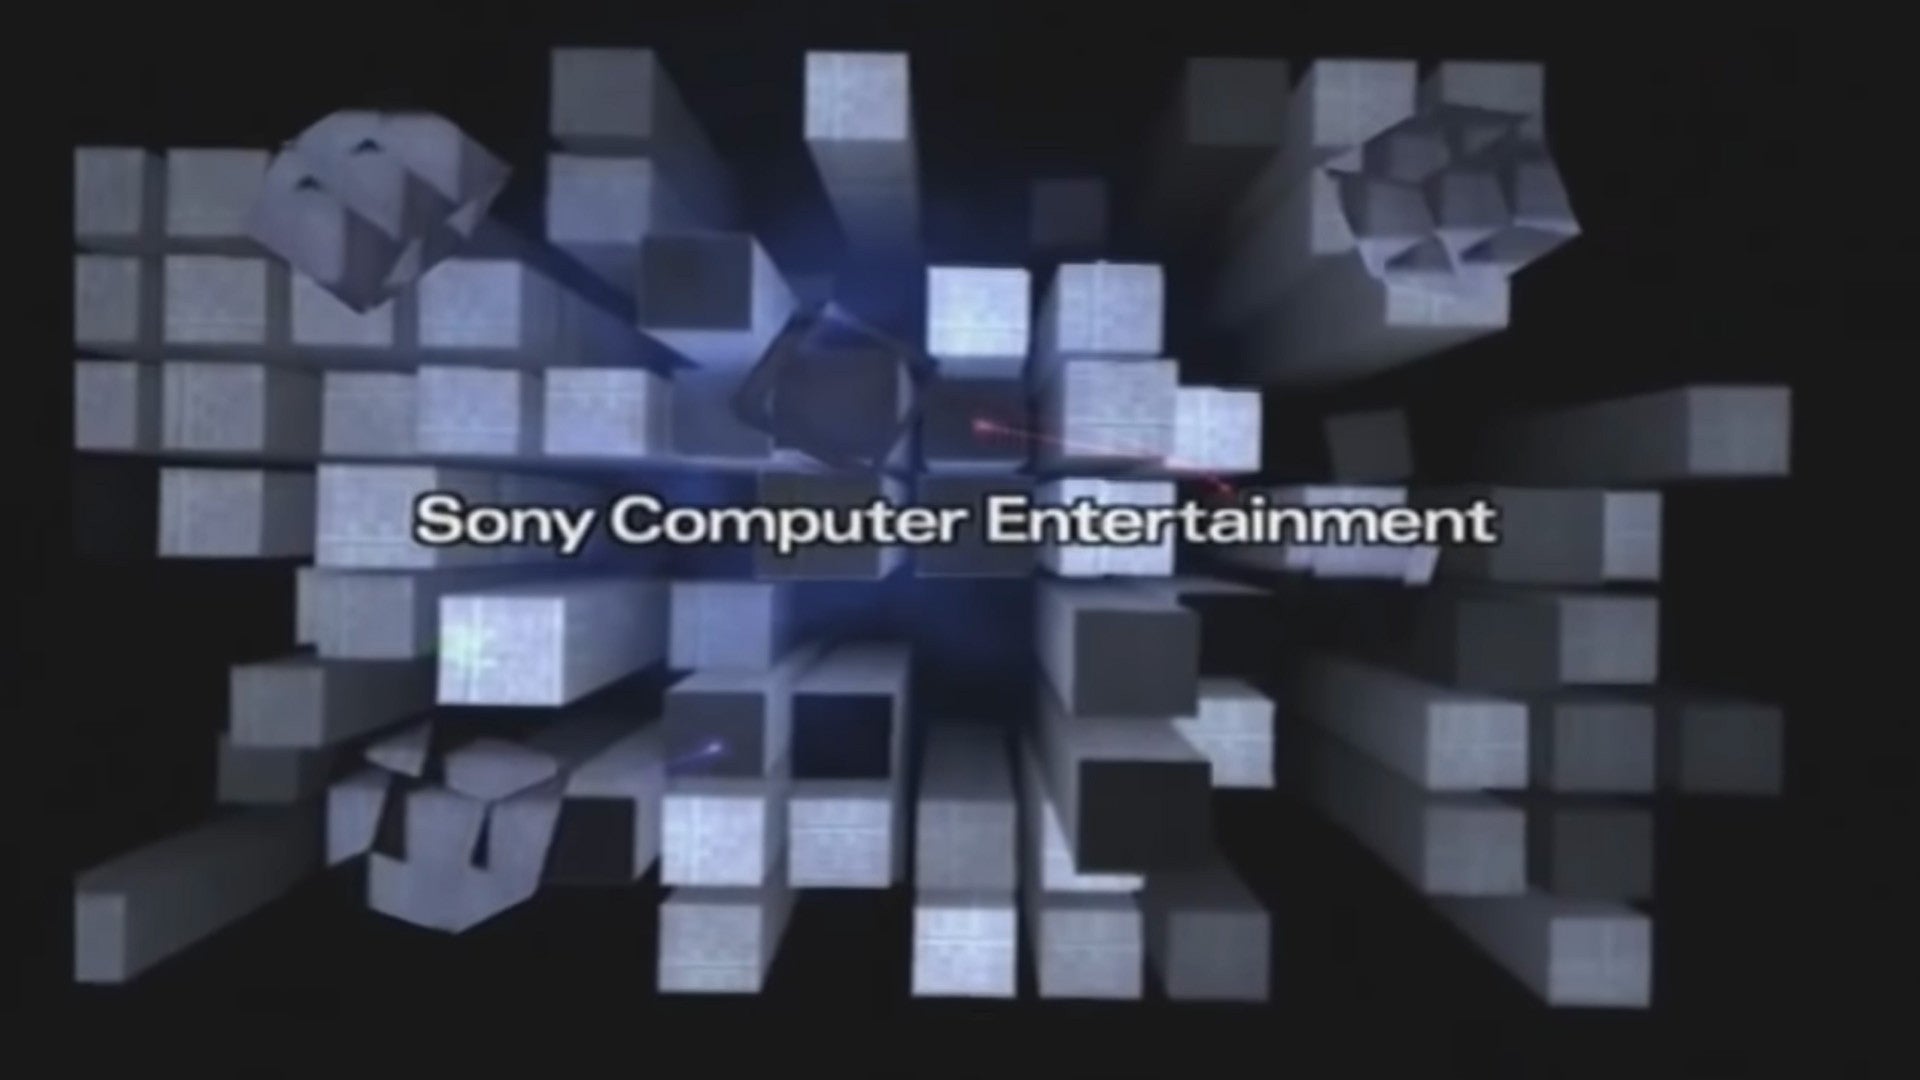 Obrazki dla PS2 i tajemnica wież z ekranu startowego. Ciekawostka z przeszłości